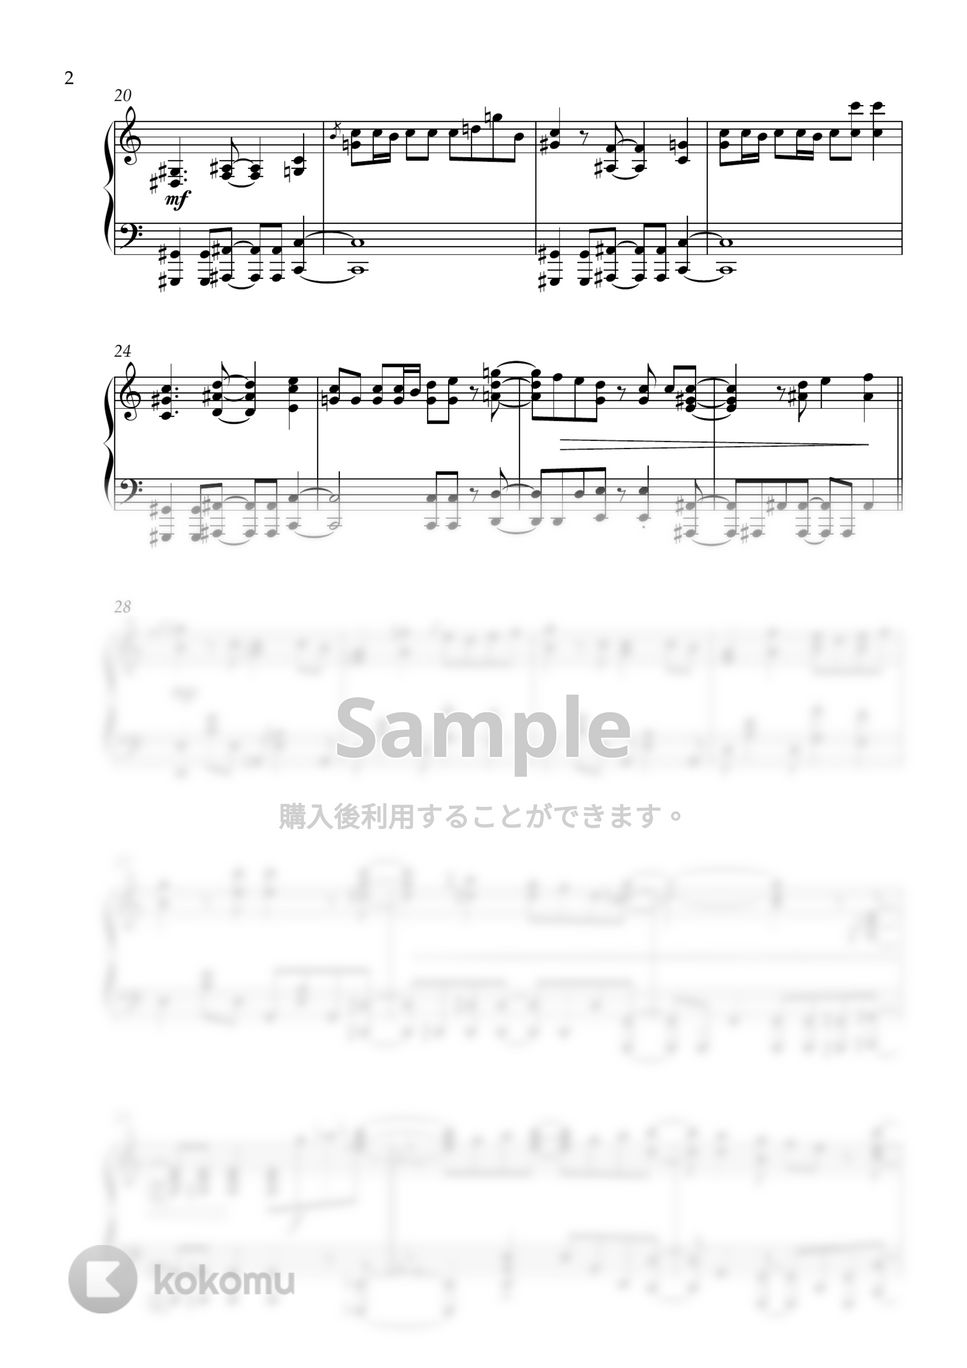 Ado - クラクラ (ピアノソロ/TV size) by しぐ (JunkMaker)